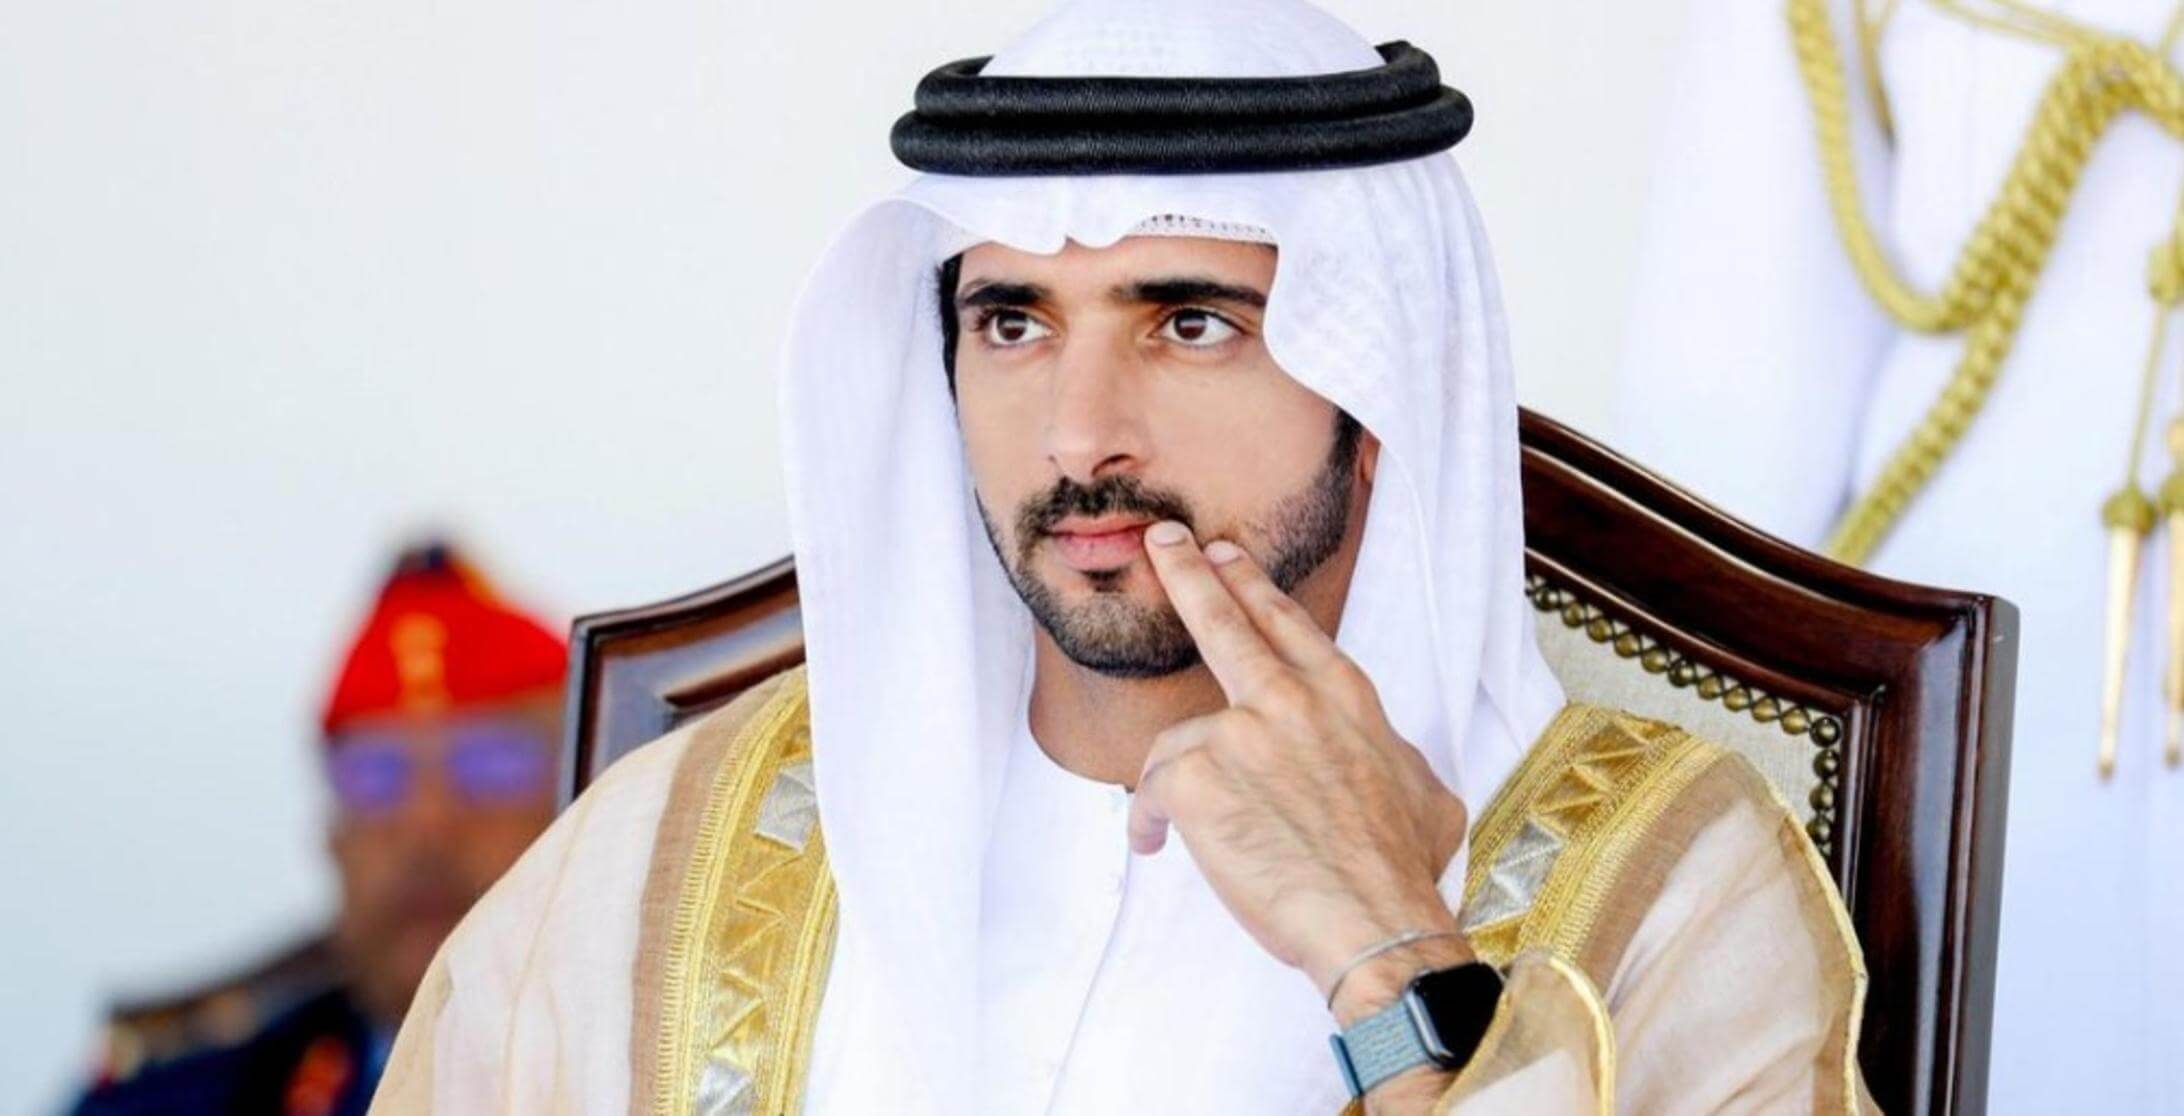 Dubai Prince